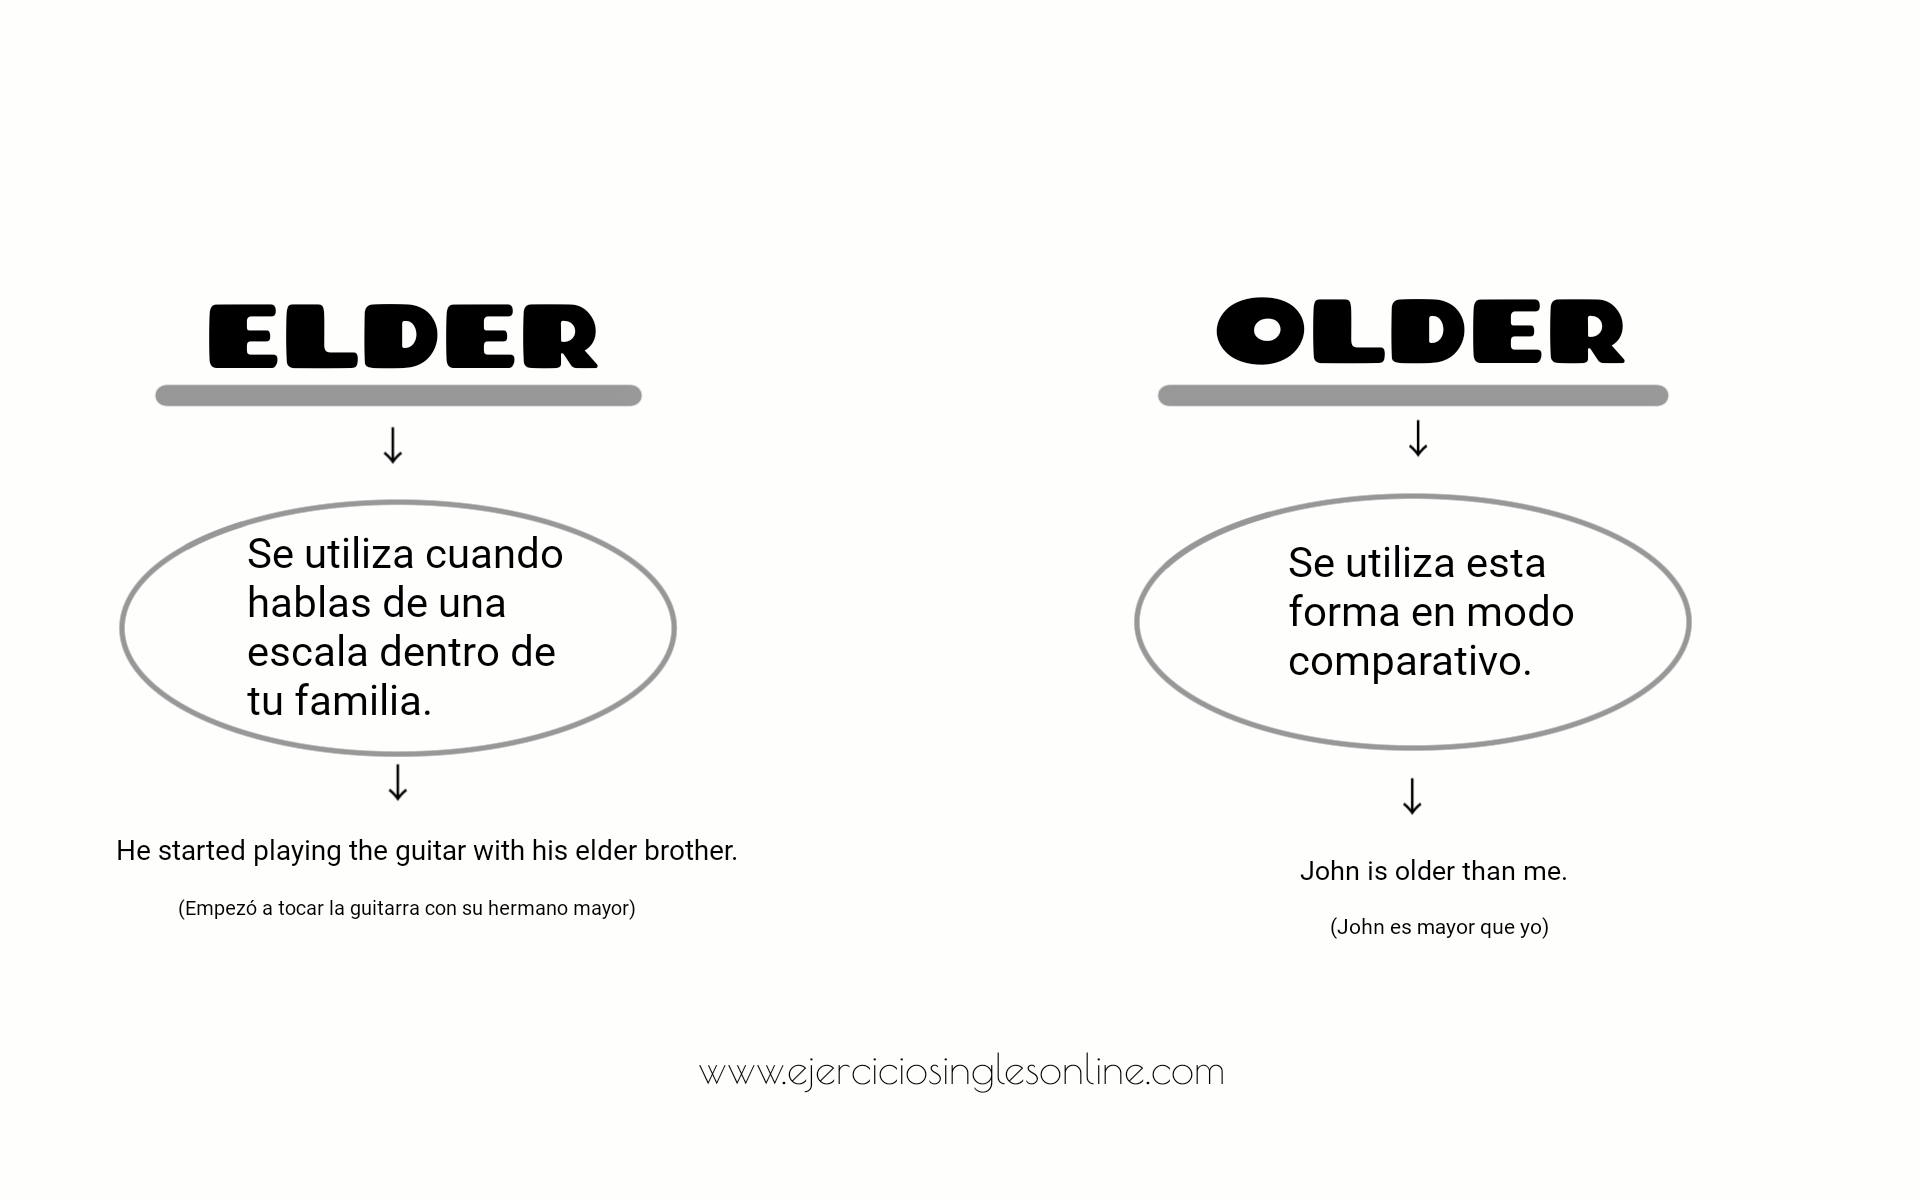 Older или Elder разница. Elder older различие. Old ELD разница. Older Elder правило. Elder brother or eldest